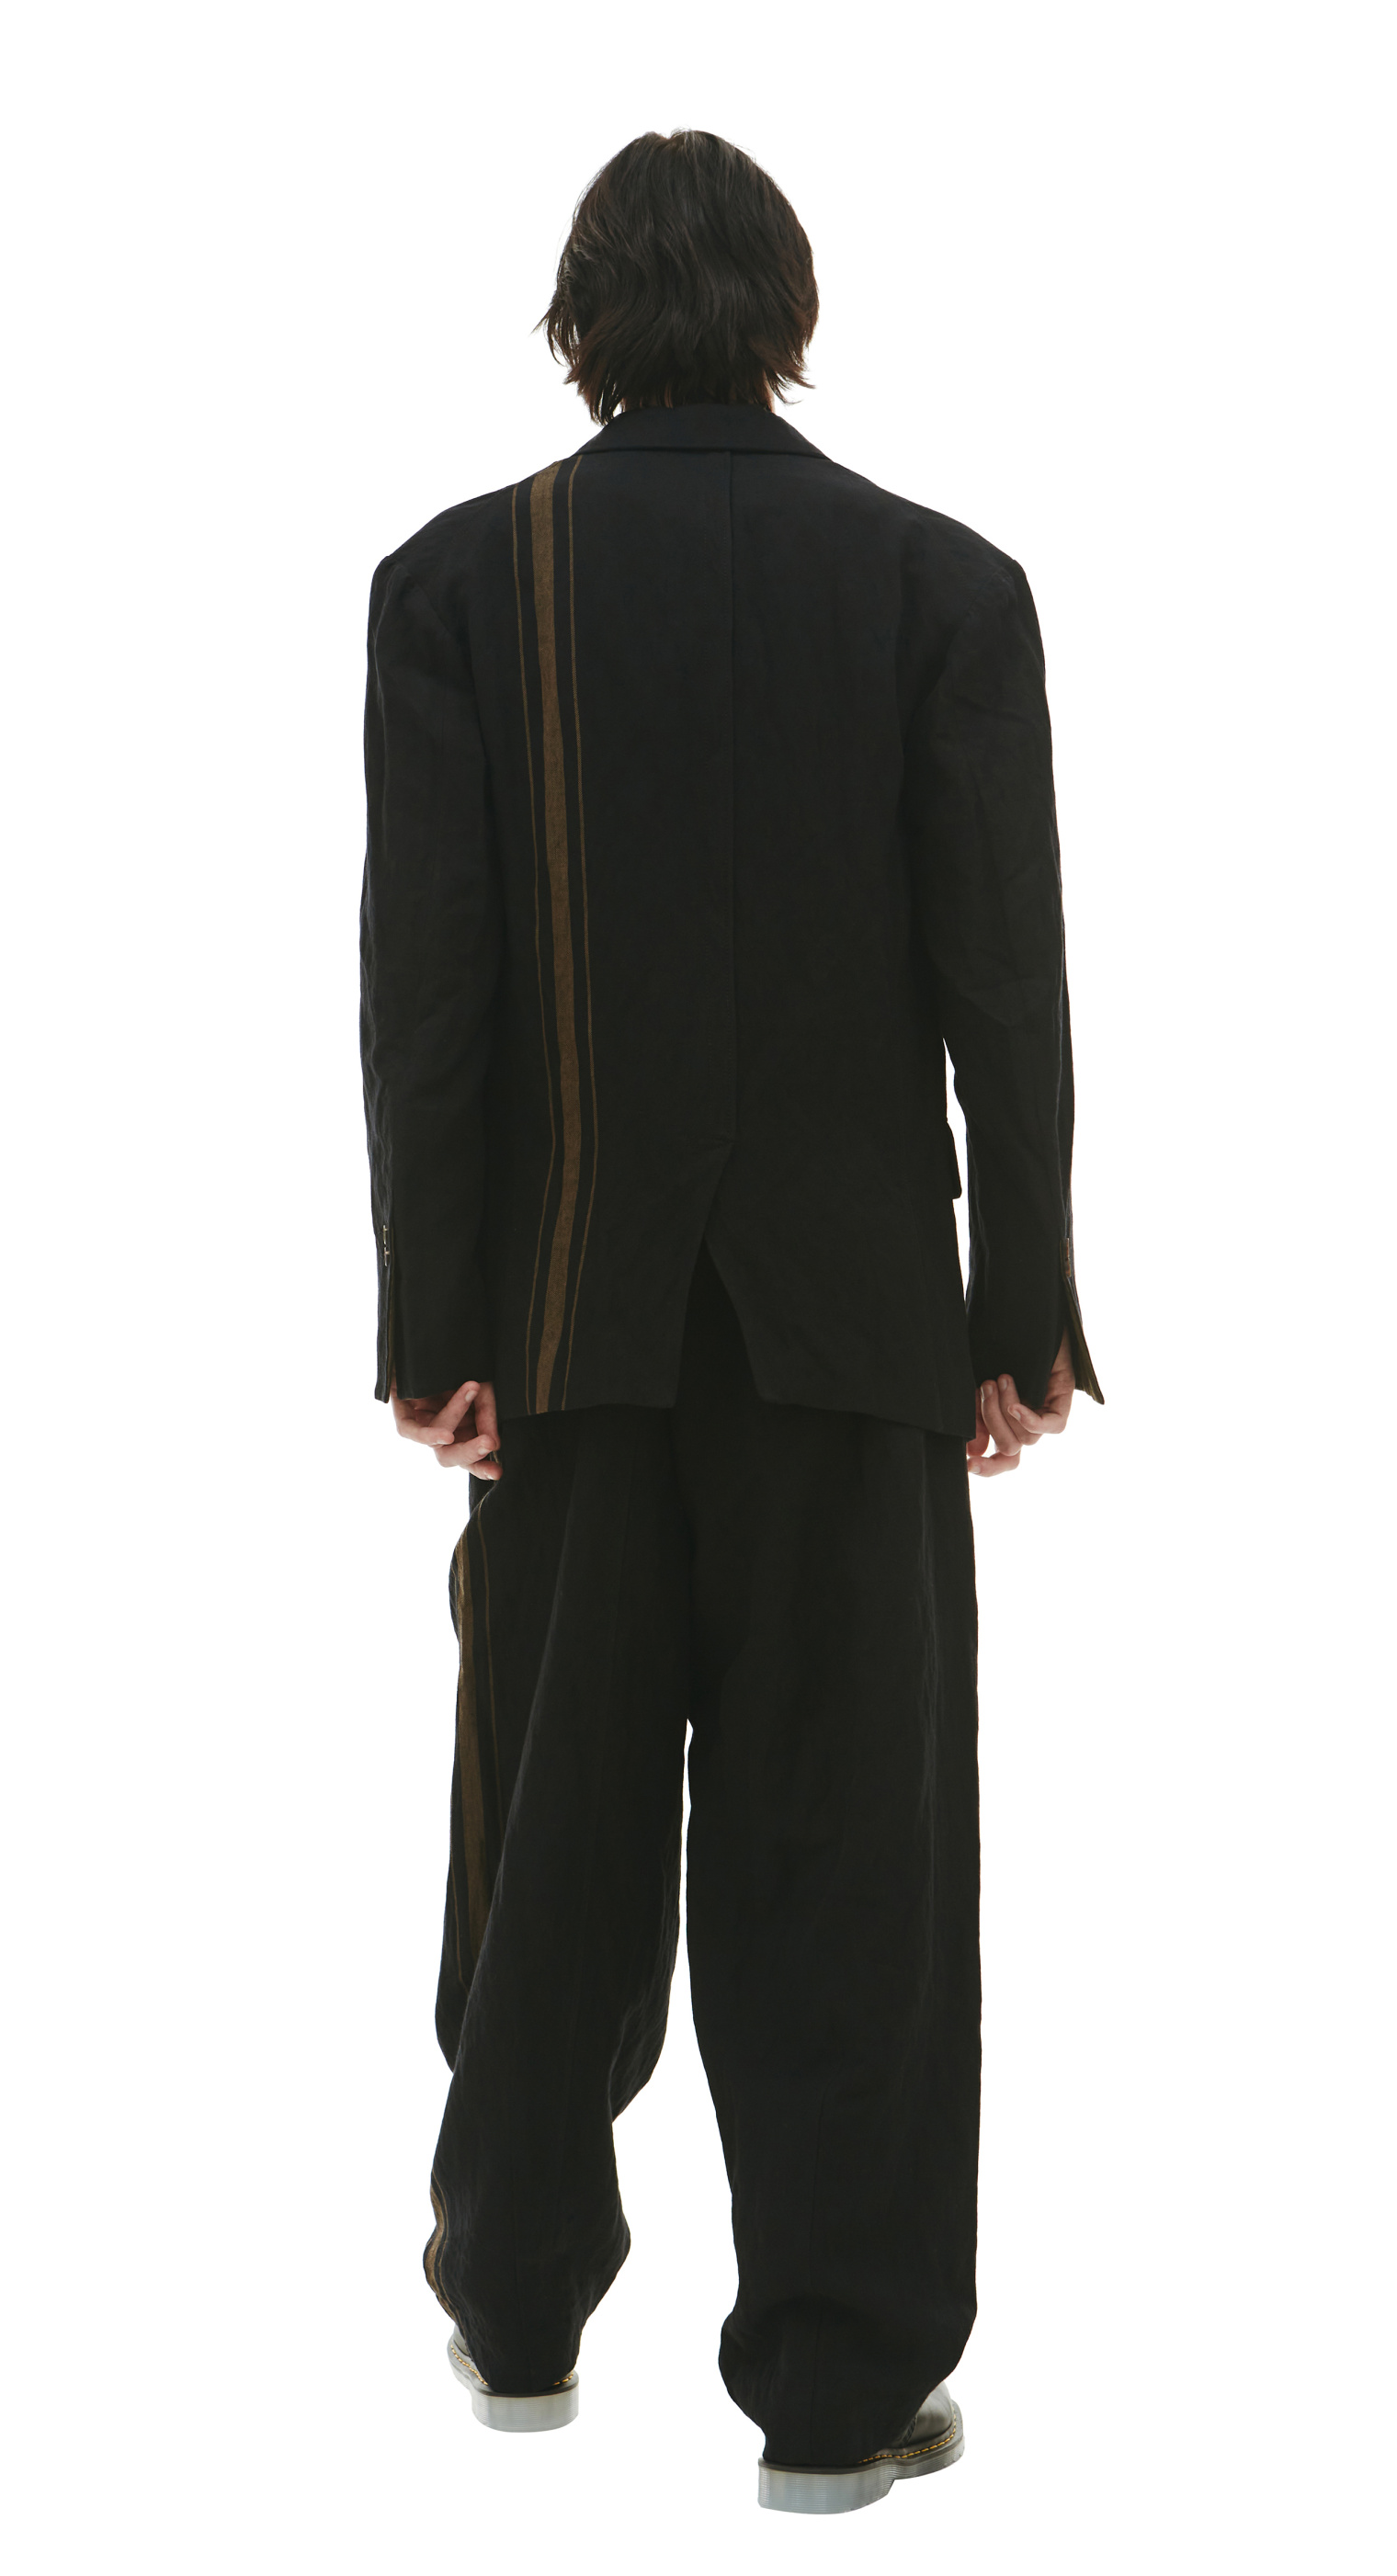 Ziggy Chen Льняной пиджак с контрастной полоской